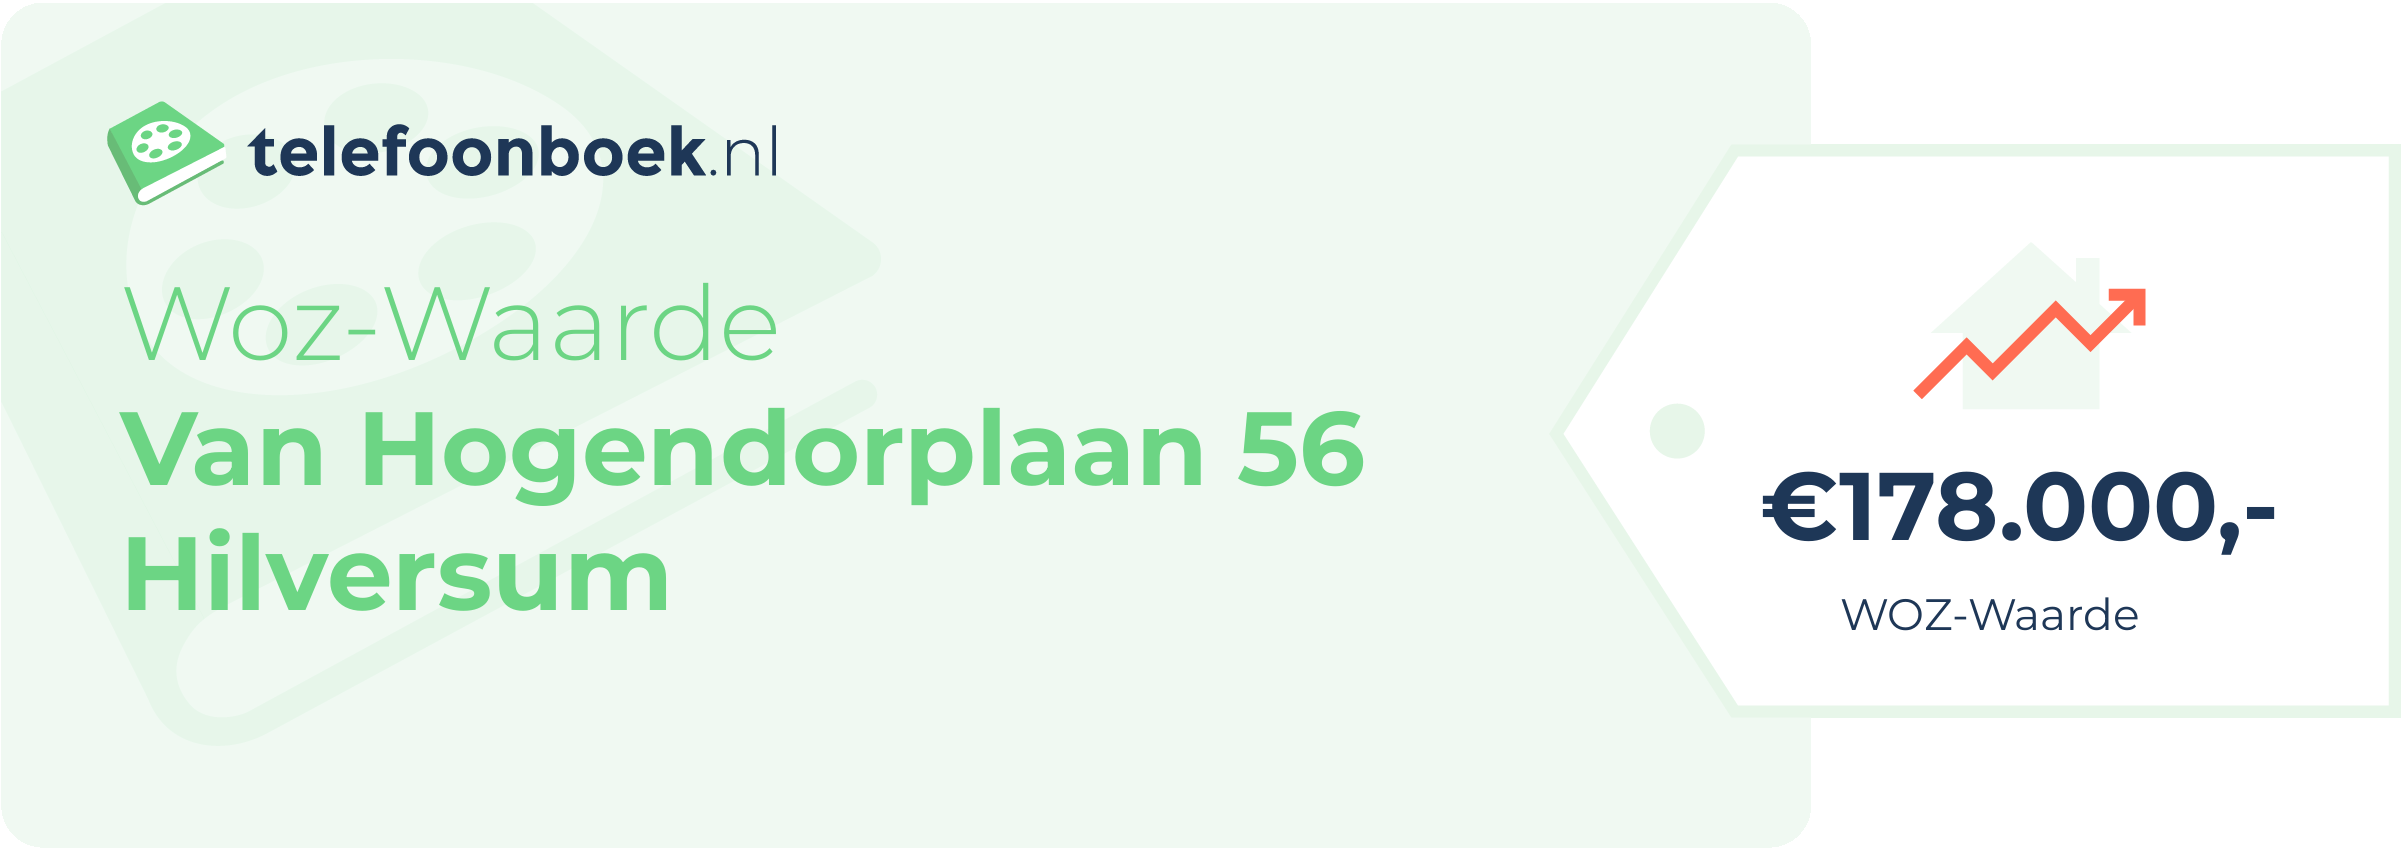 WOZ-waarde Van Hogendorplaan 56 Hilversum